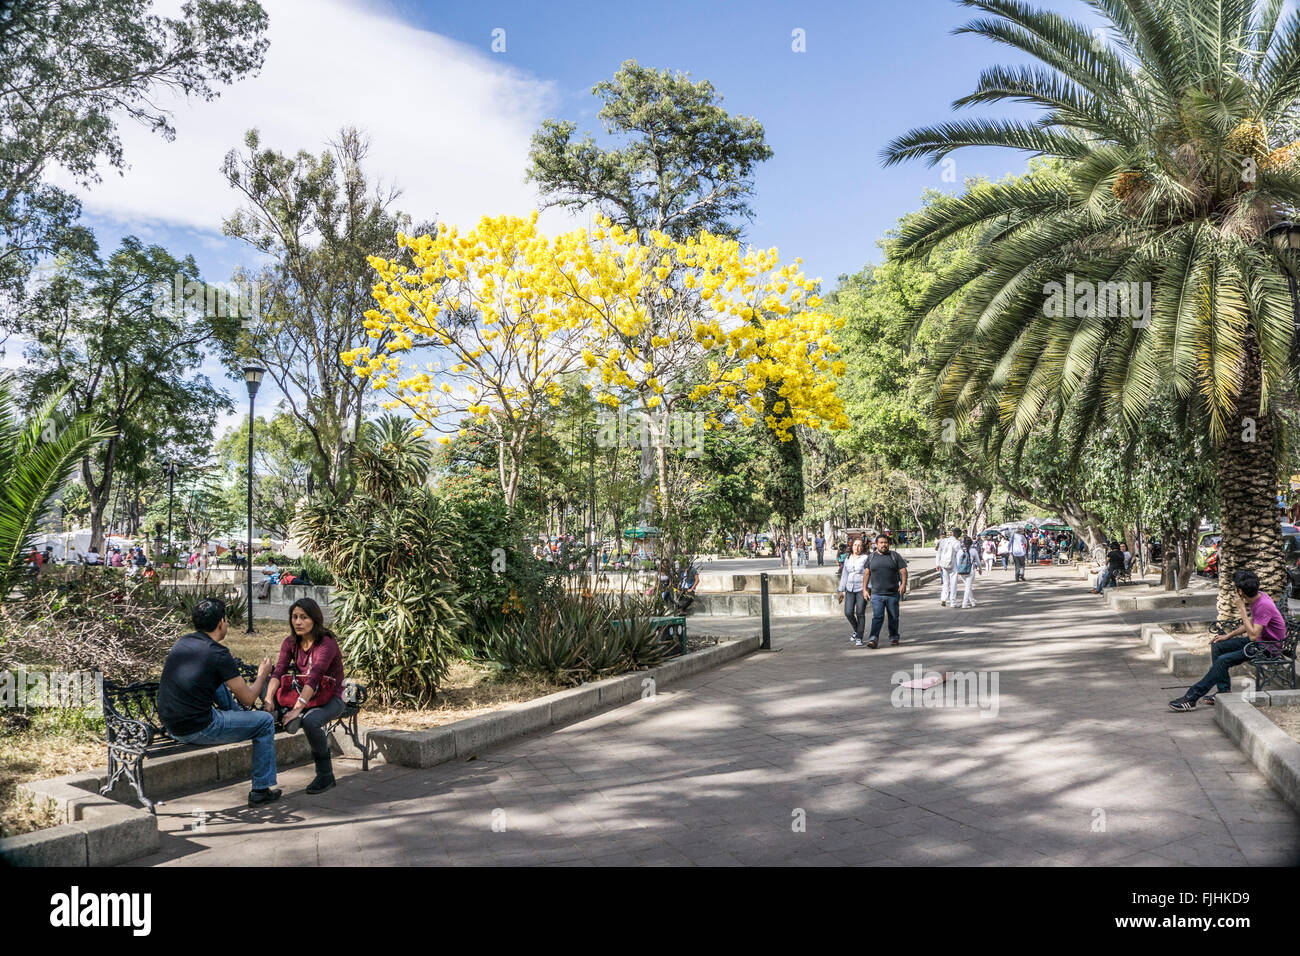 Alegre escena primavera parque Llano Oaxaca con amarillo brillante acacias florecidas y parejas paseando sentado en tonos sunshine Foto de stock